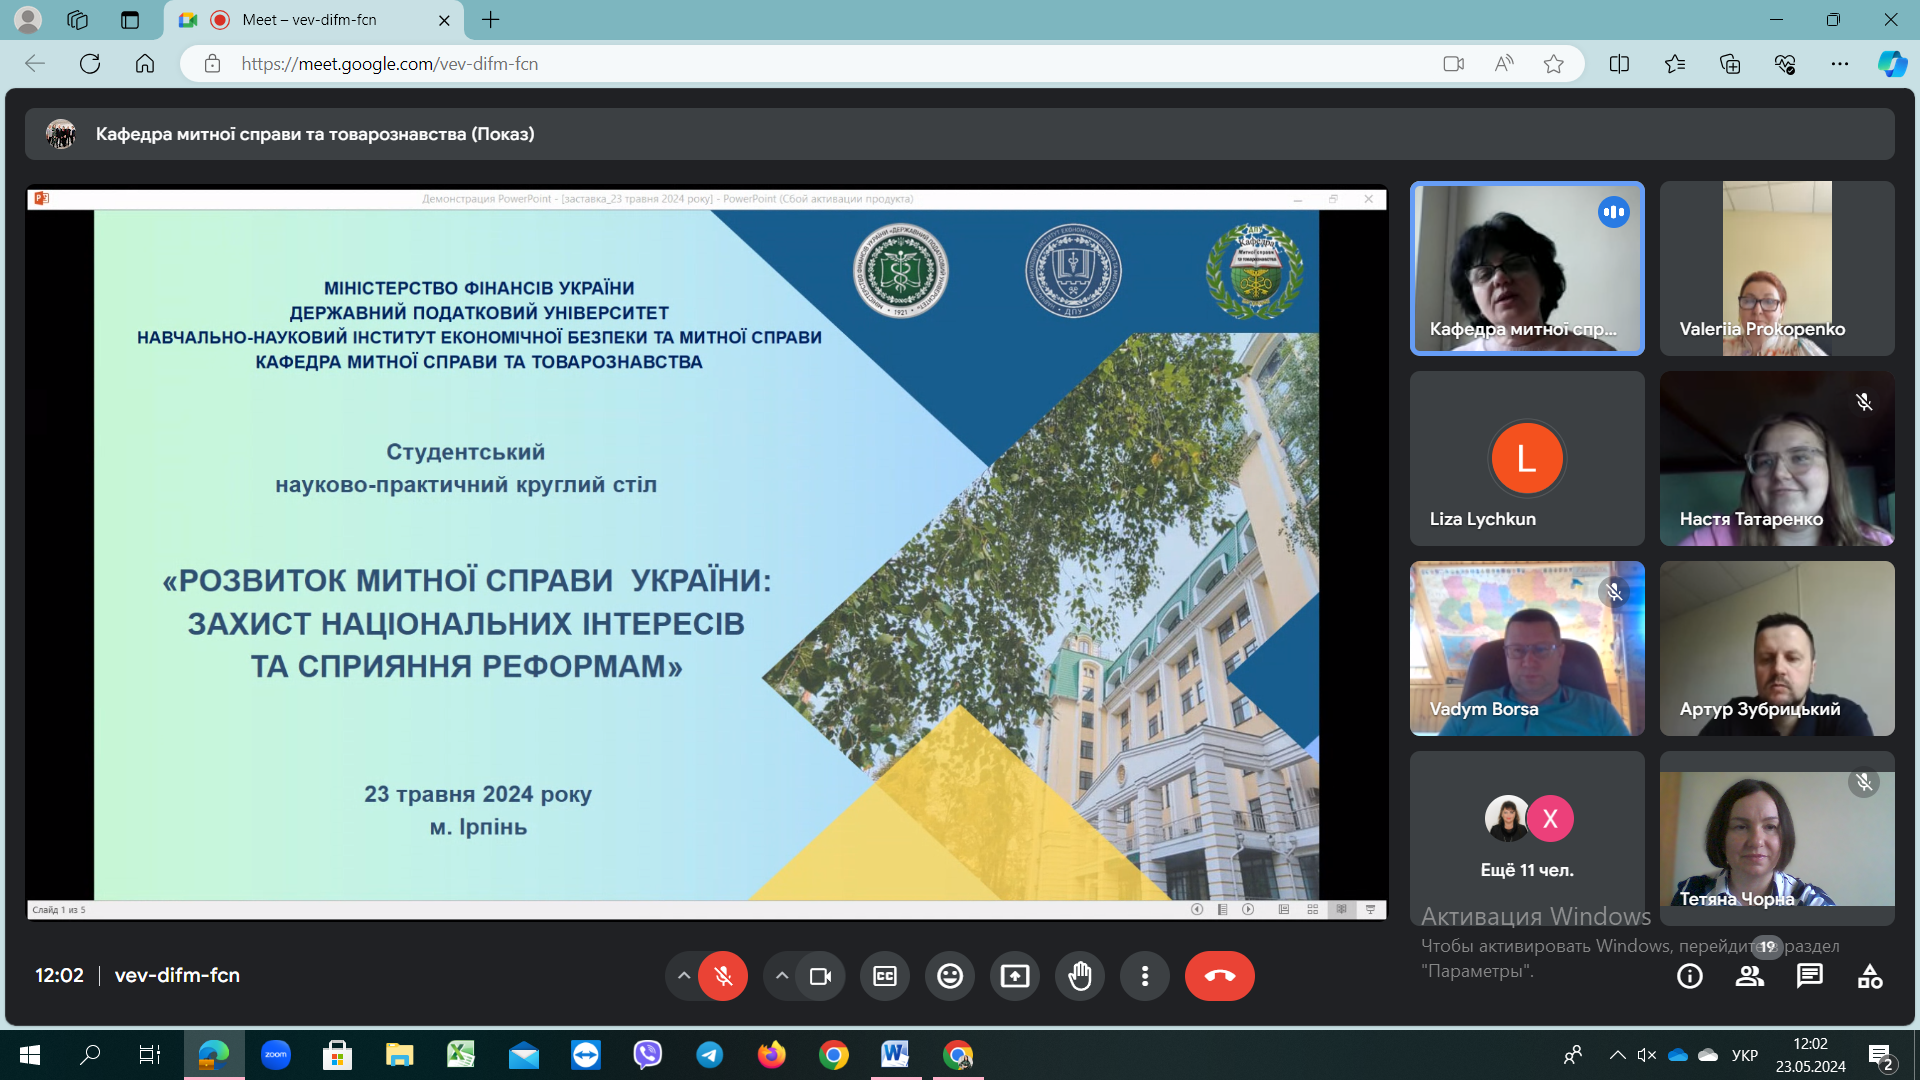 Відбувся студентський науково-практичний круглий стіл «Розвиток митної справи України: захист національних інтересів та сприяння реформам»